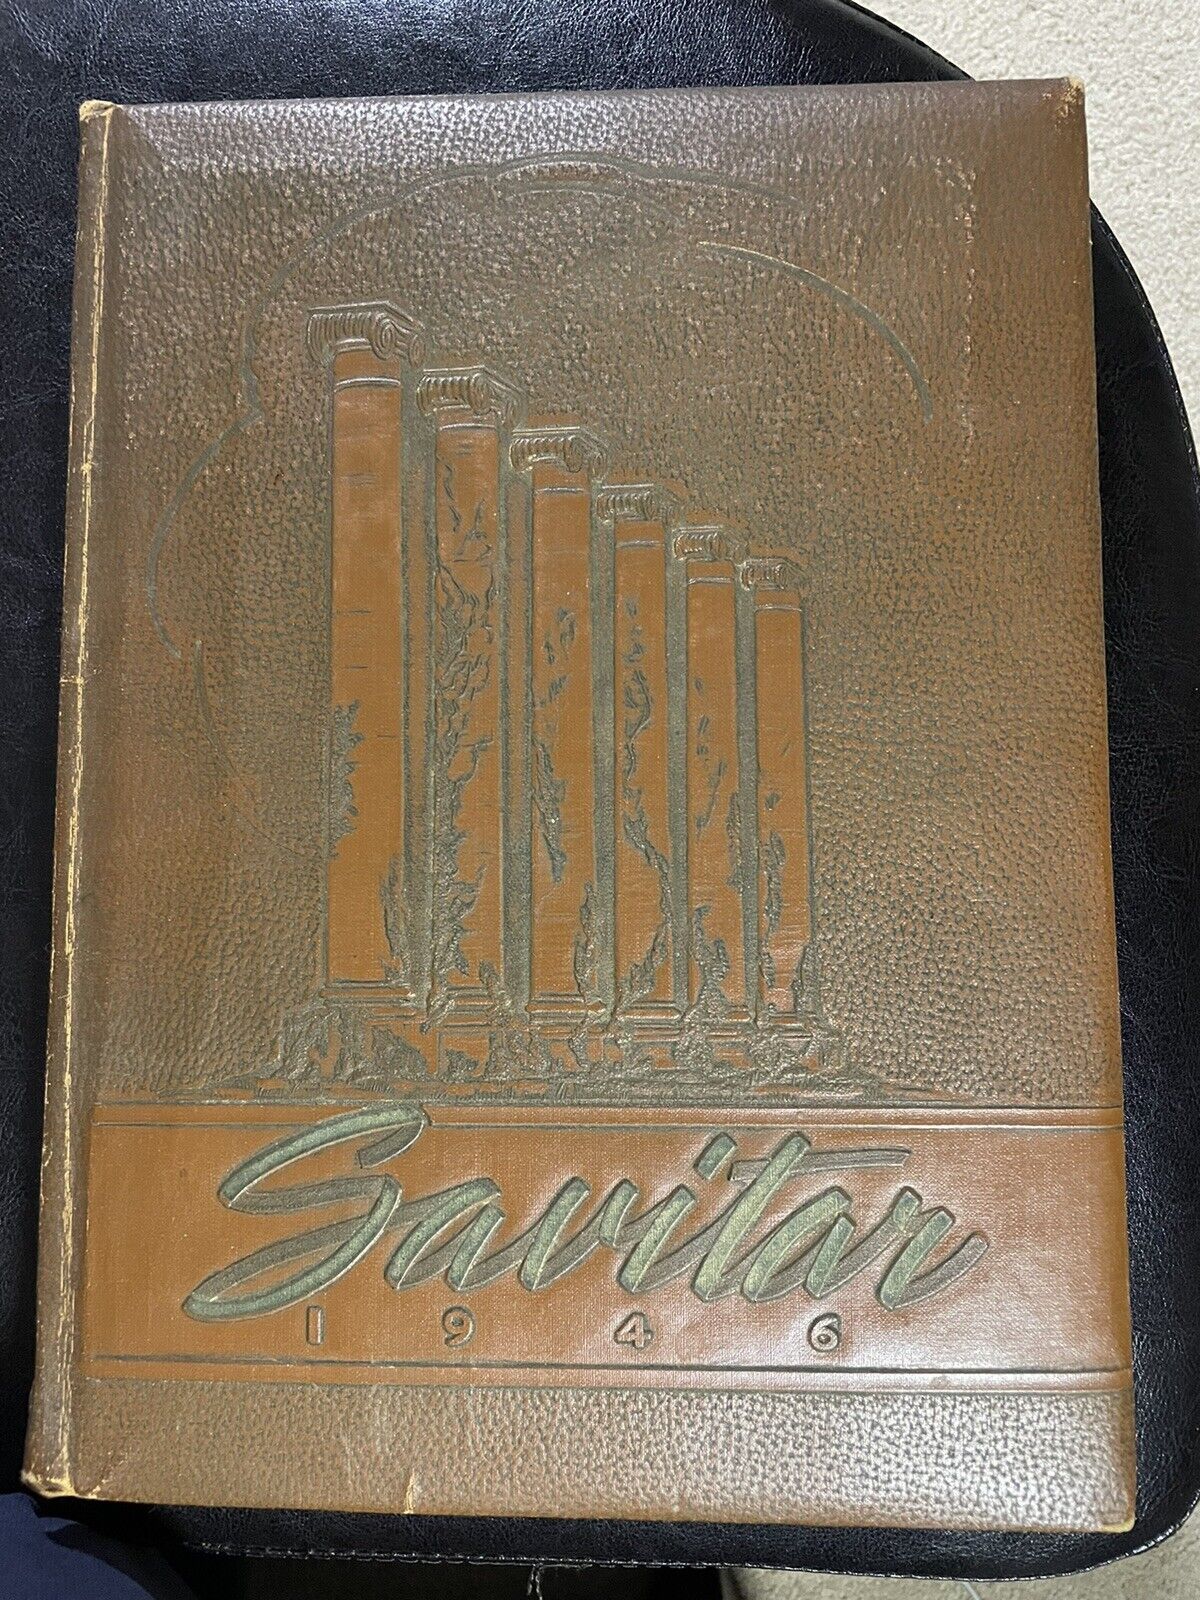 1946 Savitar Missouri University Yearbook.